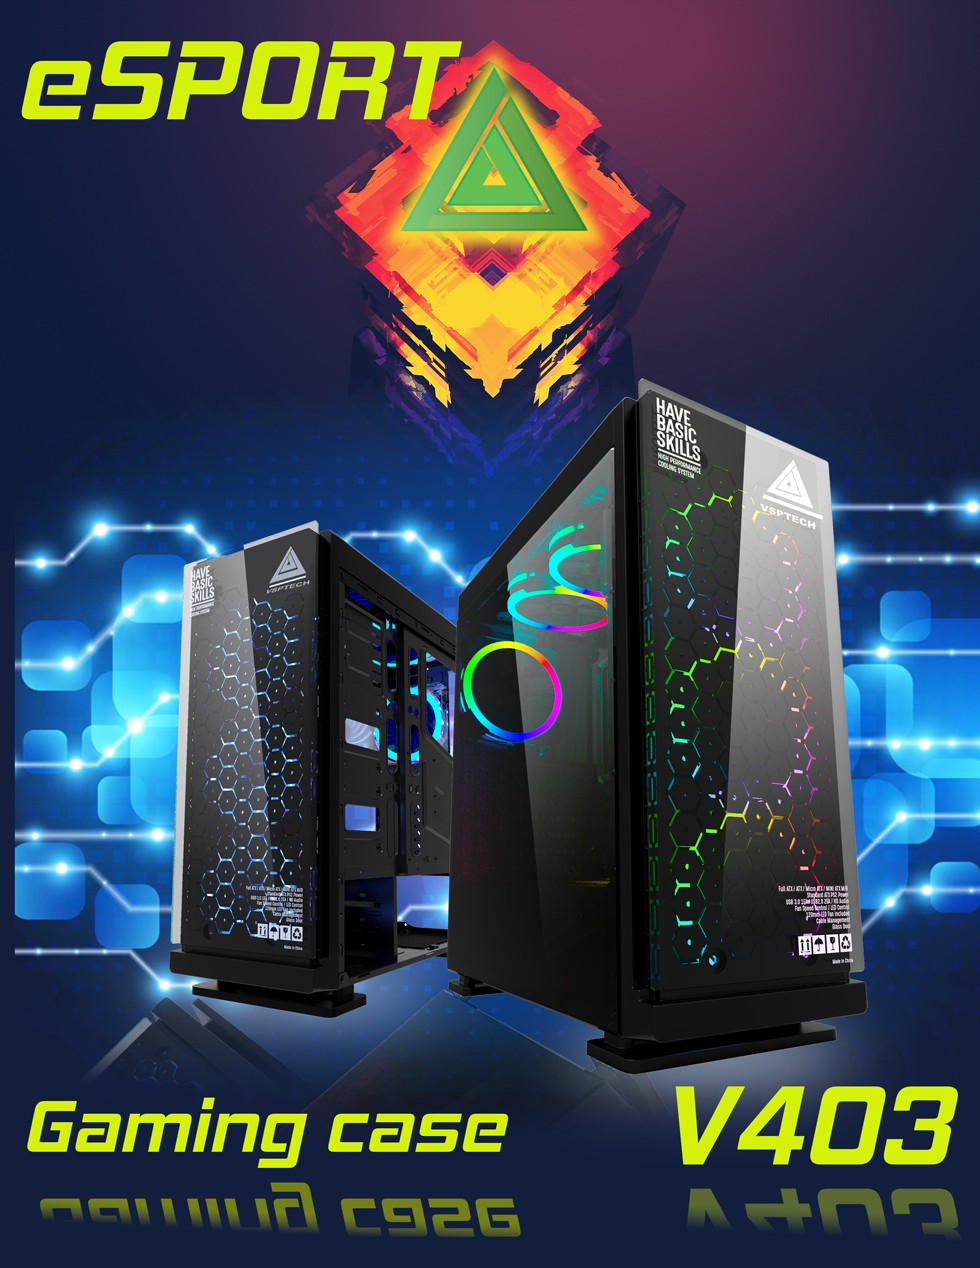 Vỏ Case Gaming VSP FA403 – Black